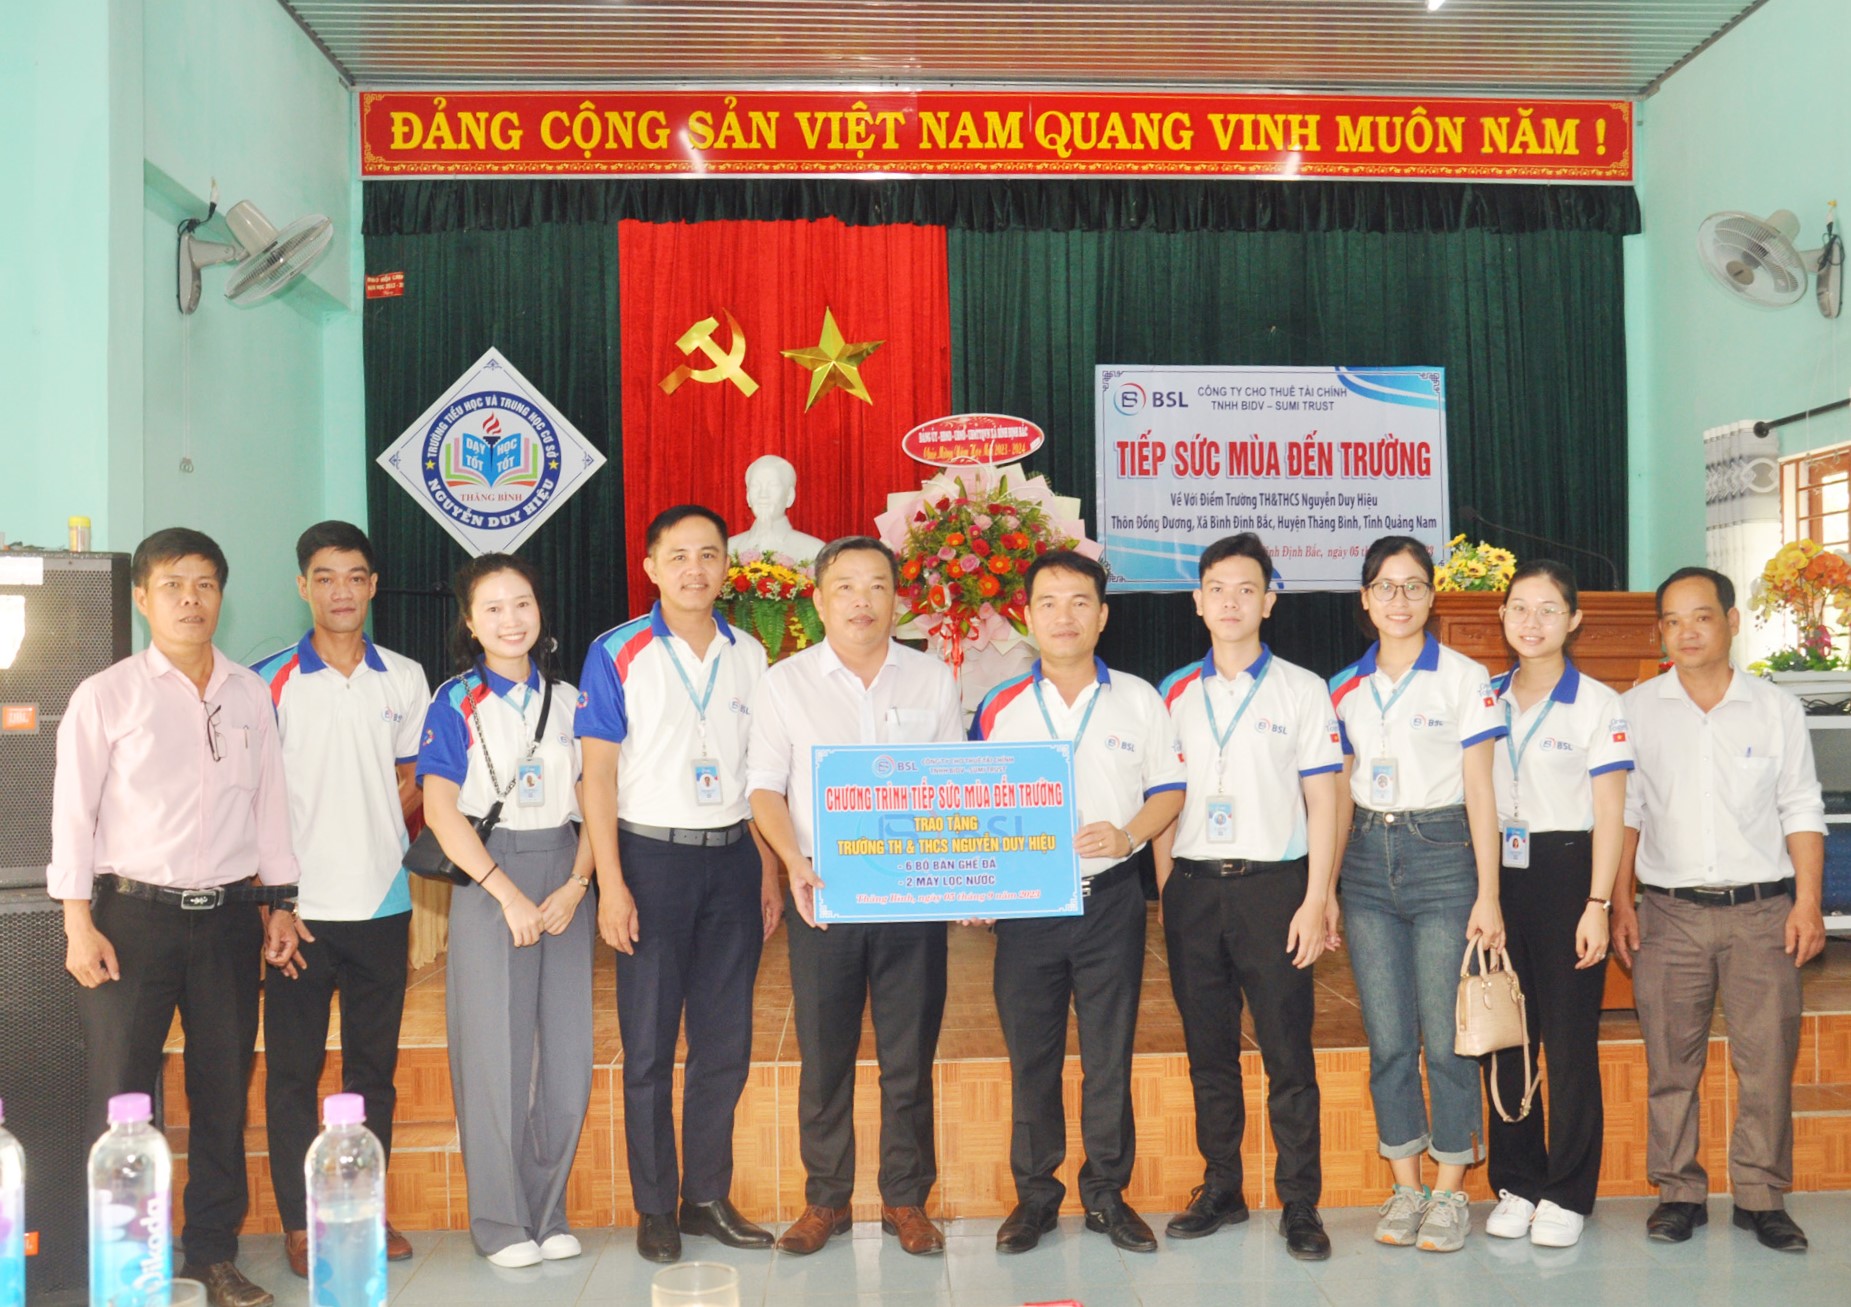 BSL Đà Nẵng đại diện Công ty trao tặng 6 bộ bàn ghế đá và 2 máy lọc nước cho Nhà trường